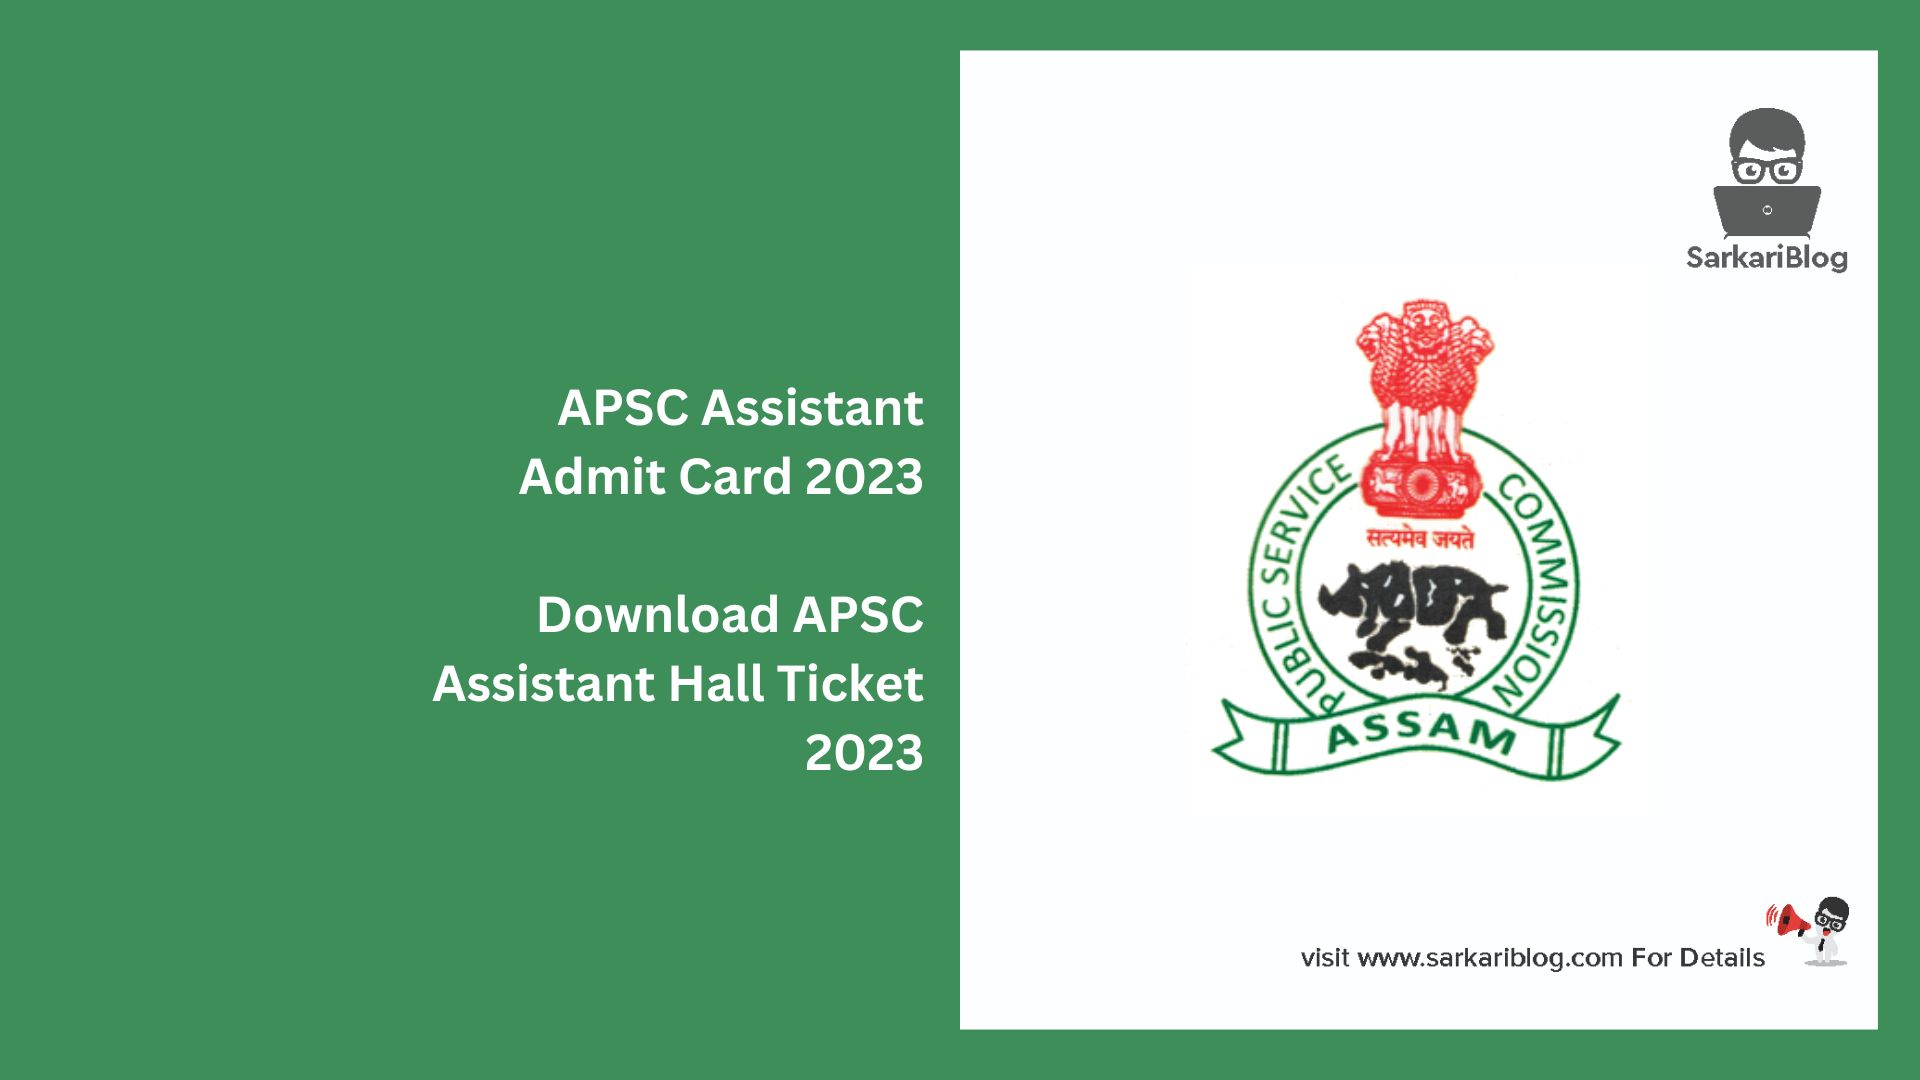 APSC Assistant Admit Card 2023